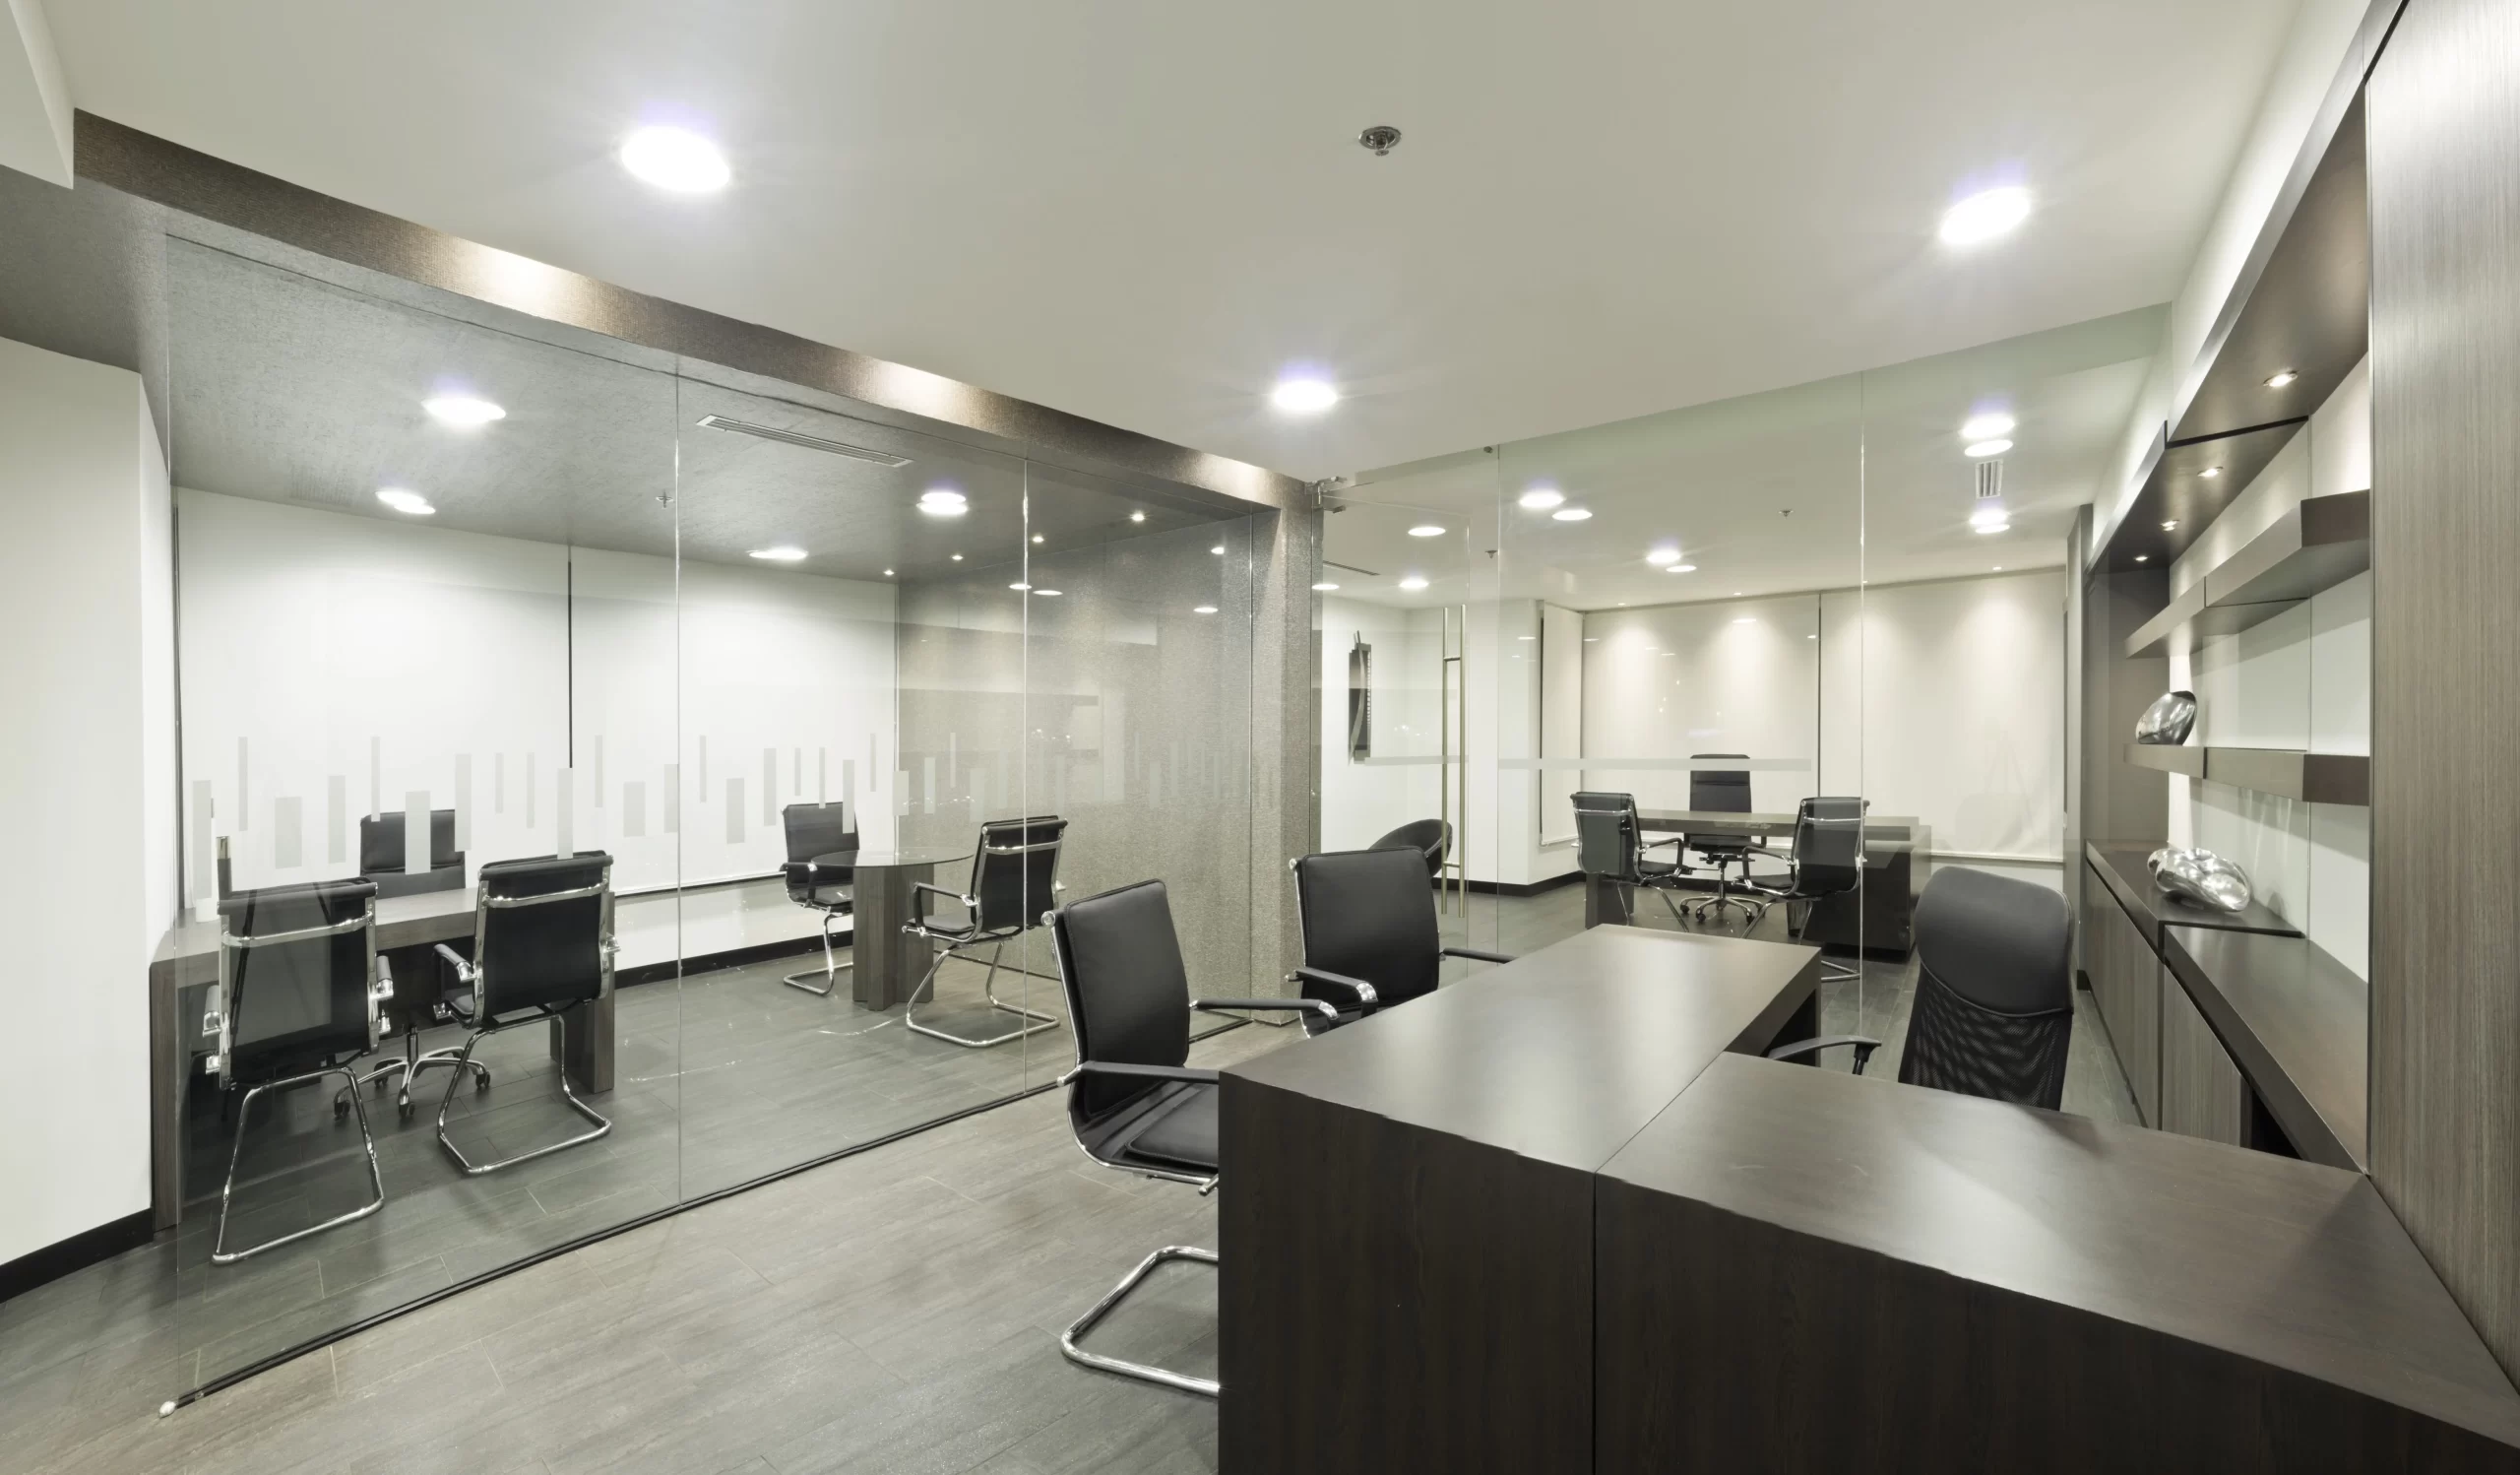 Oficina WTC - Diseño interior y remodelación de oficinas en Quito | CVD Arquitectura